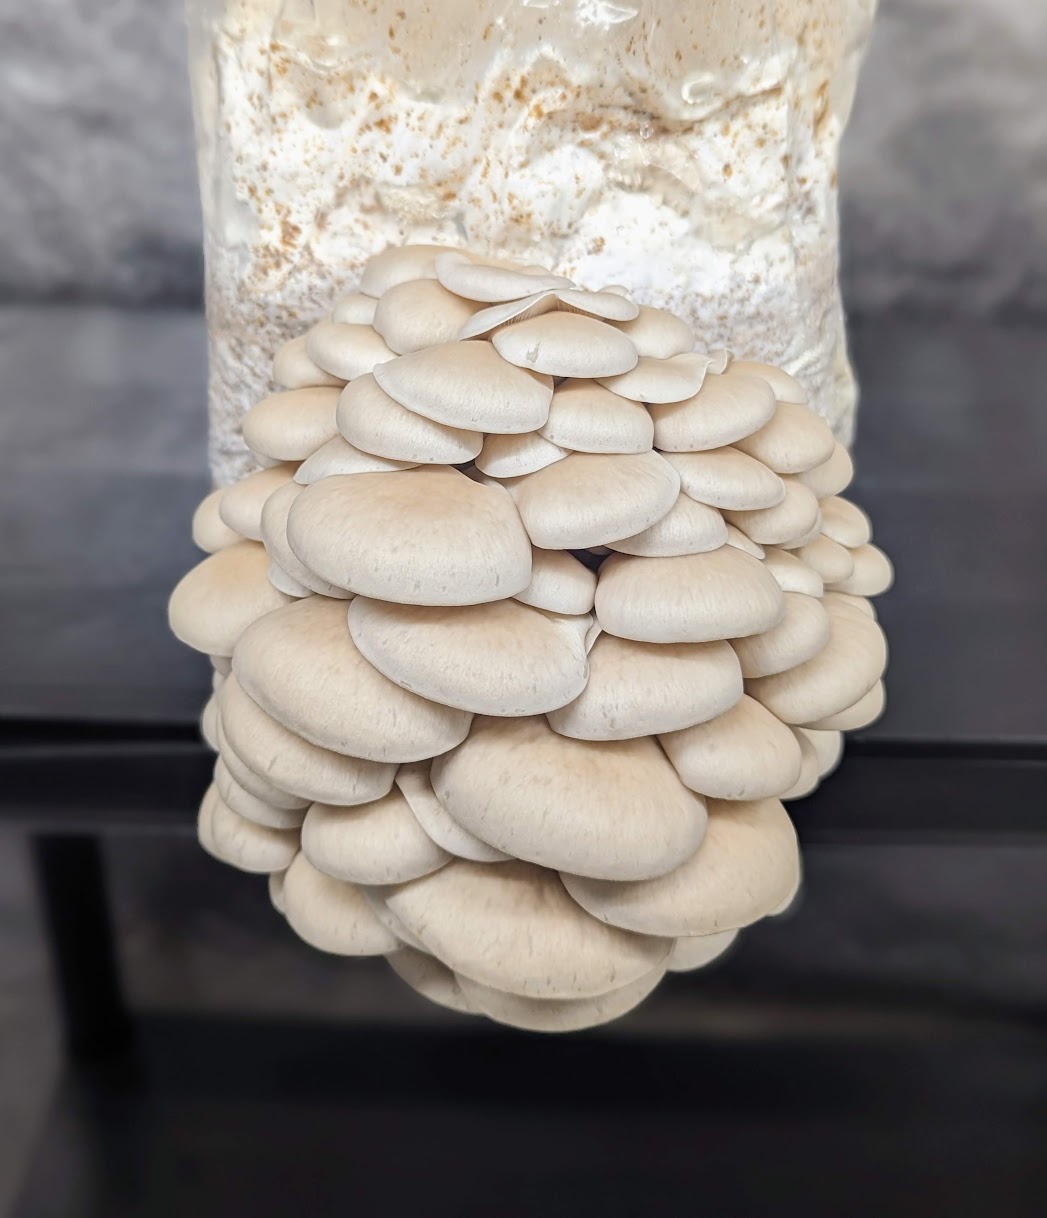 Pearl Oyster Mushroom Pleurotus ostreatus